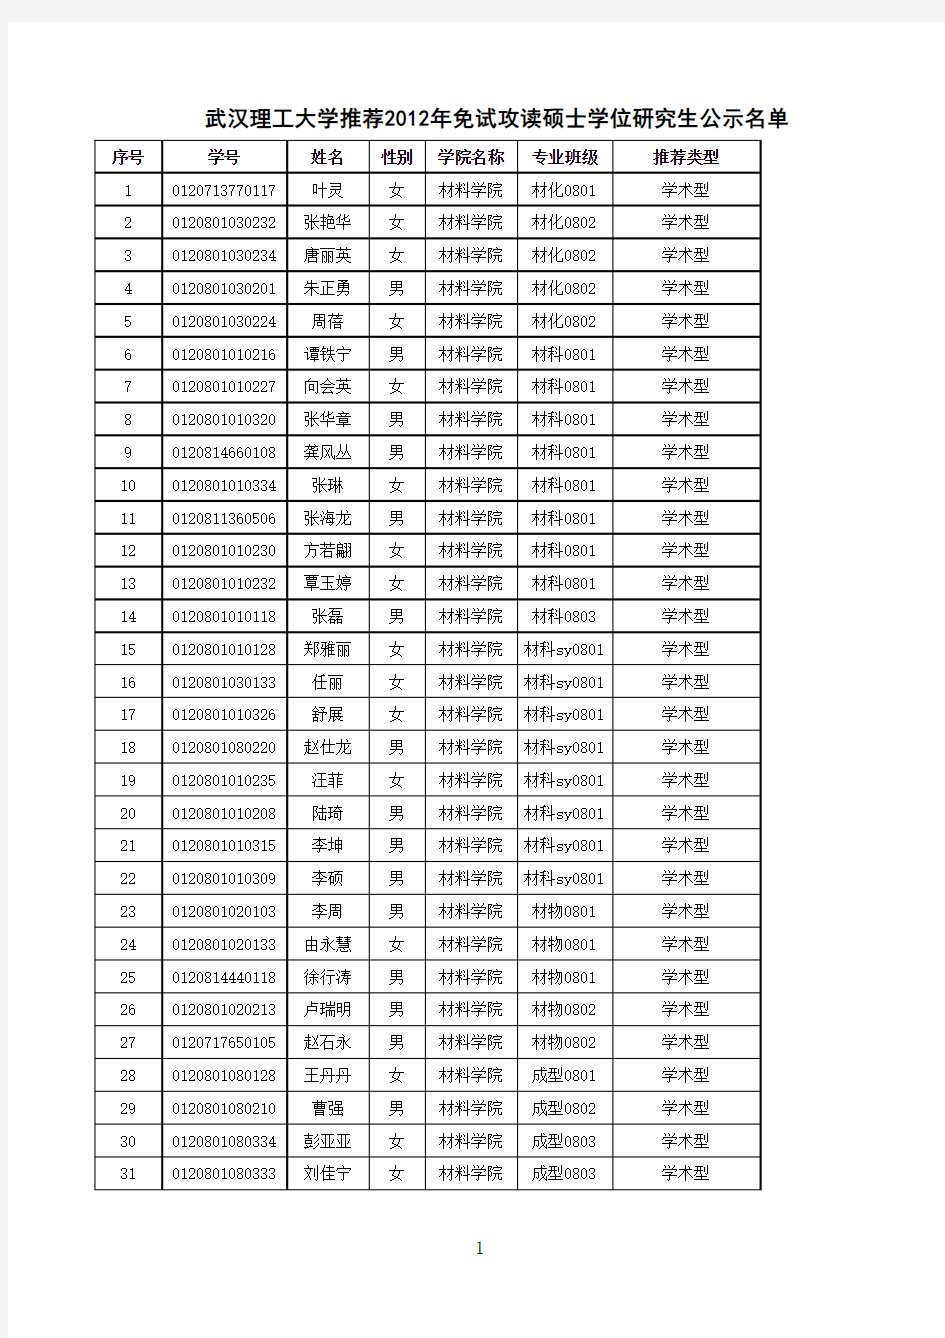 武汉理工大学2012年保送研究生名单(学校公示版)